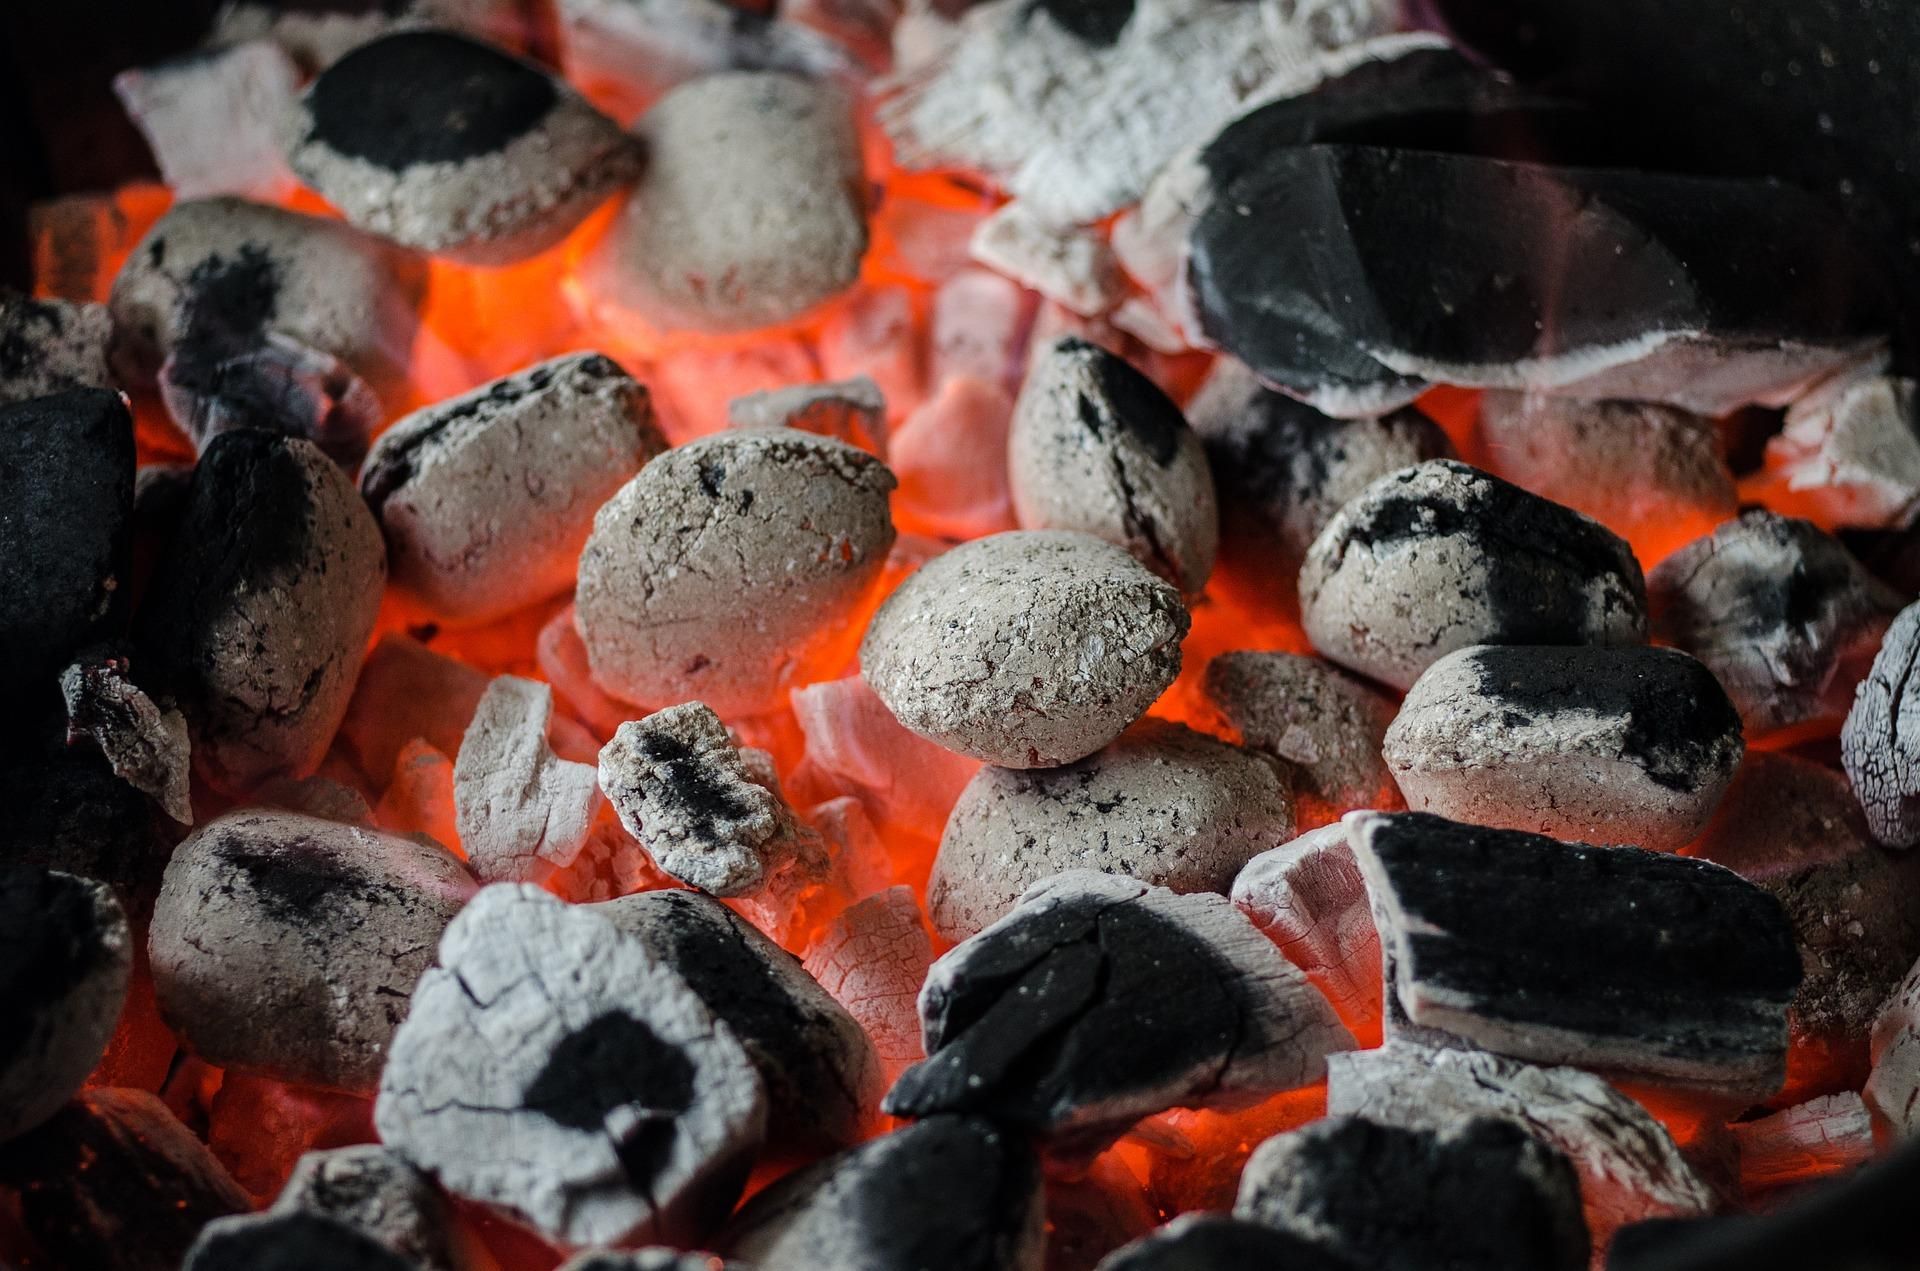 Візьміть пляшку та газету: найлегший спосіб розпалити вугілля в мангалі
